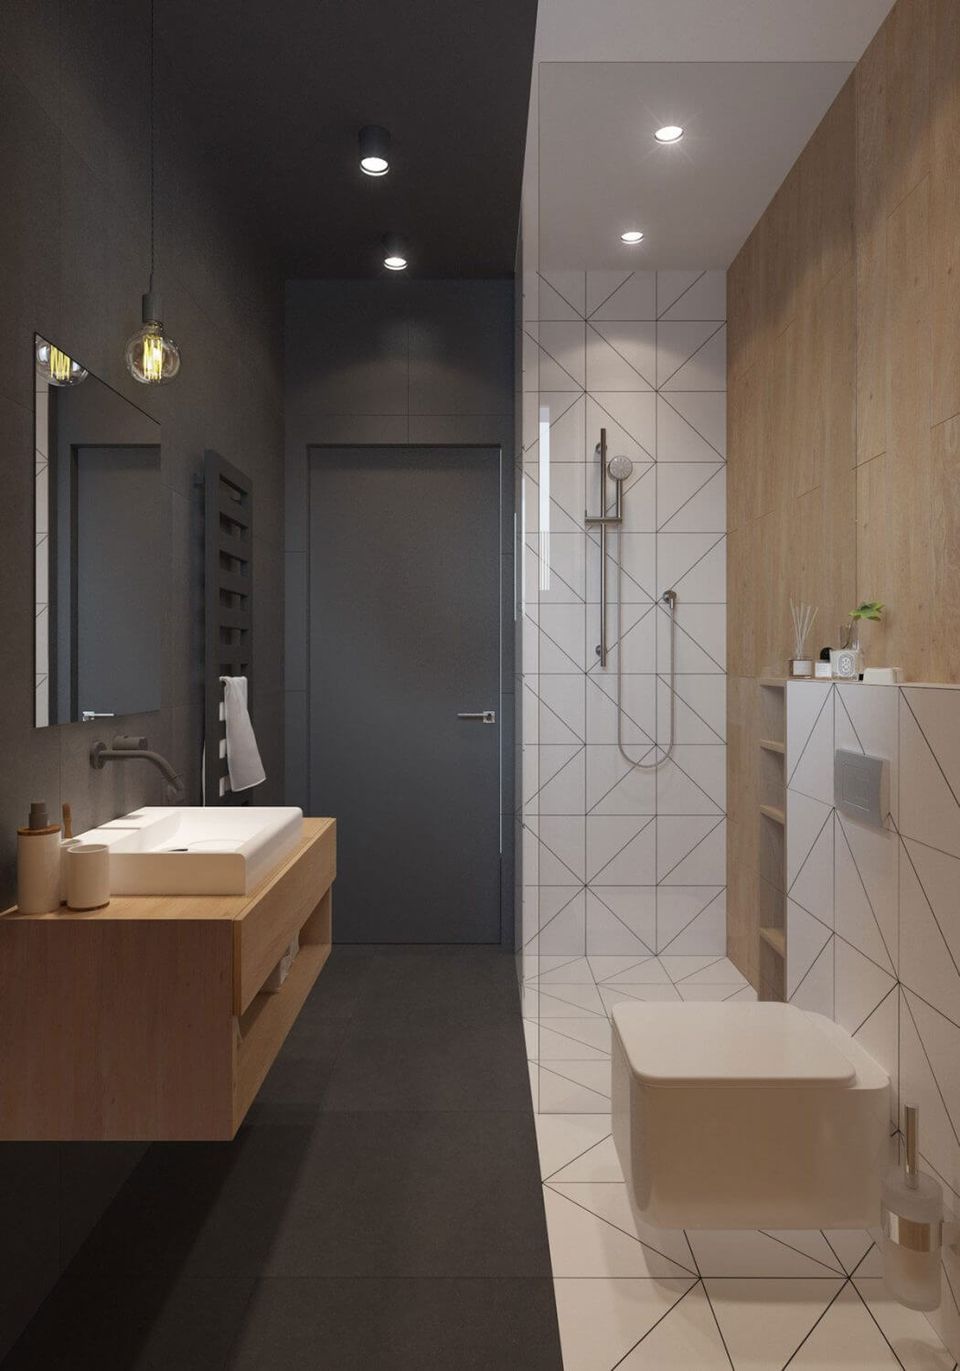 11 ScandinavianStyle Bathrooms